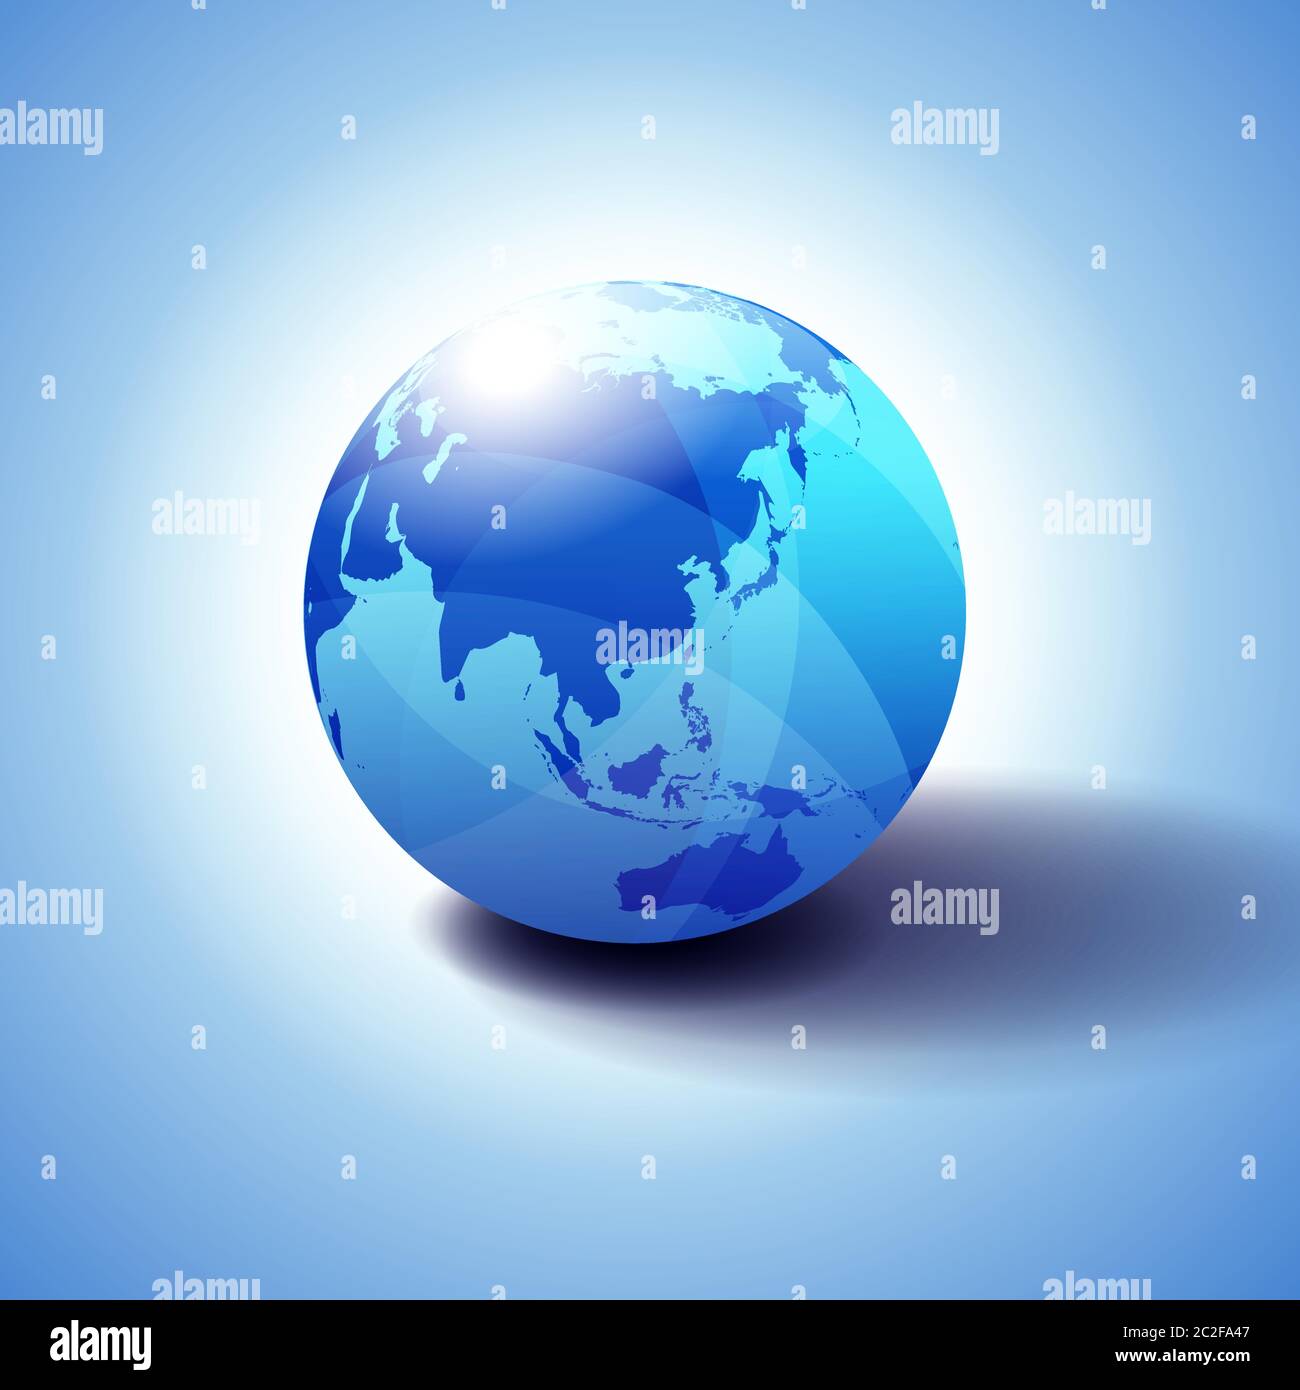 Cina Corea Giappone Pacifico, sfondo con l'icona Globe illustrazione 3D, sfera lucida e lucida con la mappa globale in blu sottile per una sensazione di trasparenza. Illustrazione Vettoriale